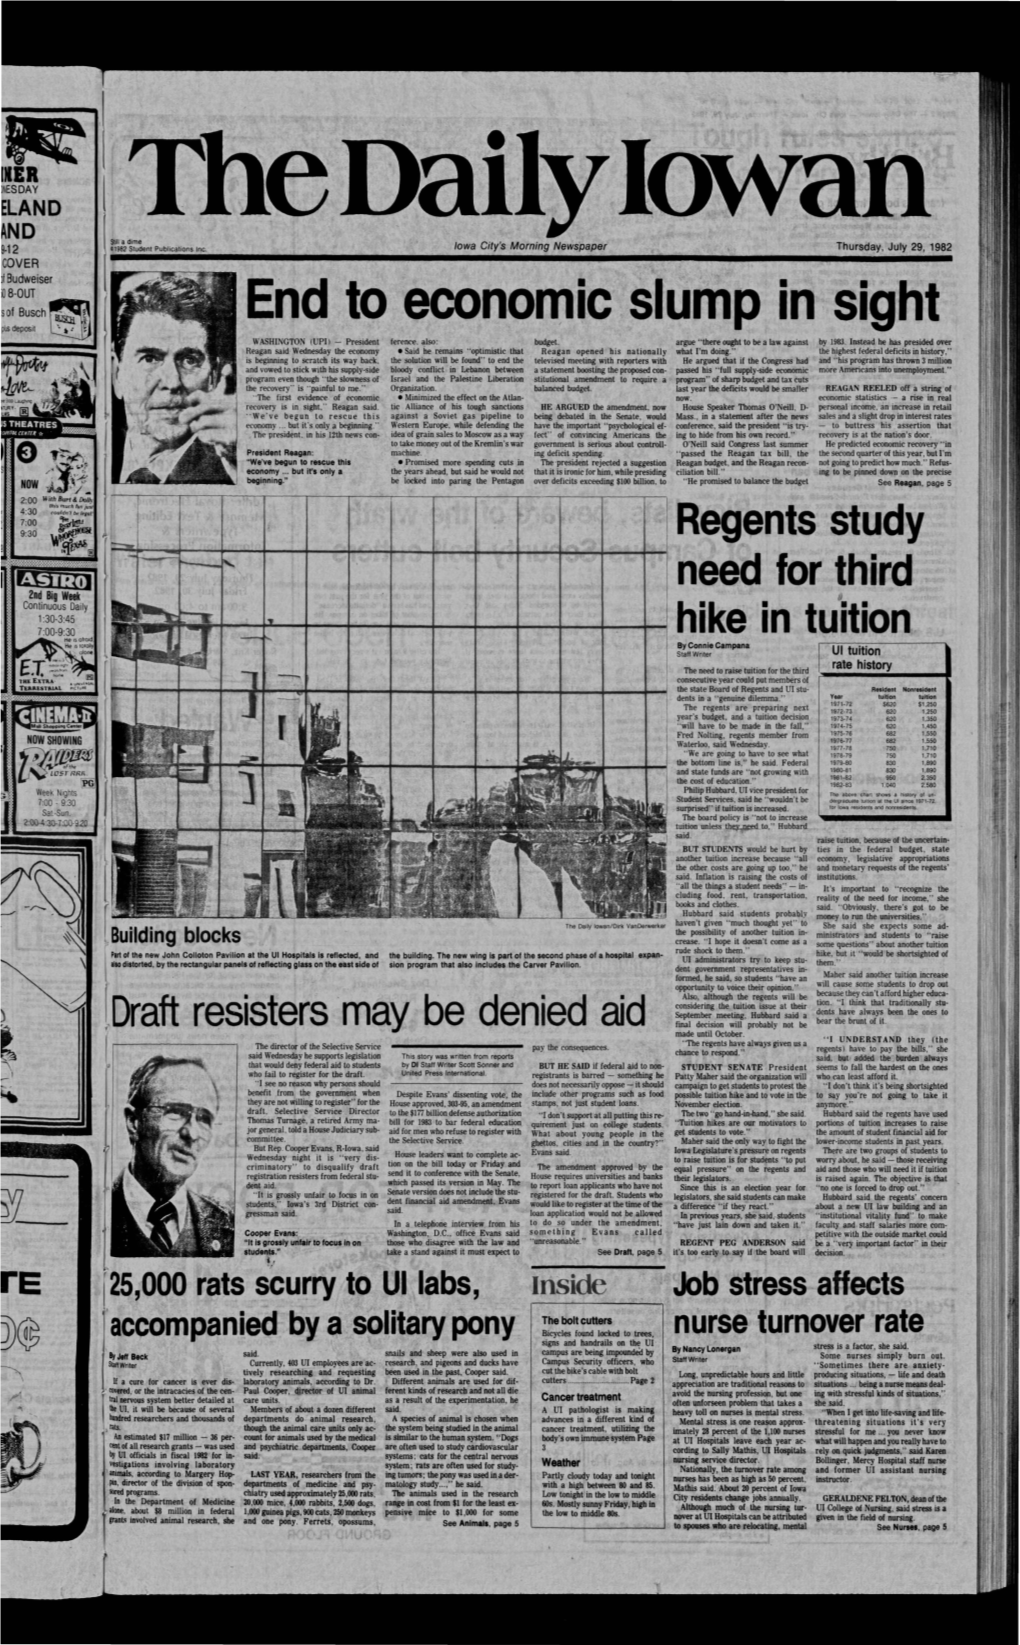 Daily Iowan (Iowa City, Iowa), 1982-07-29